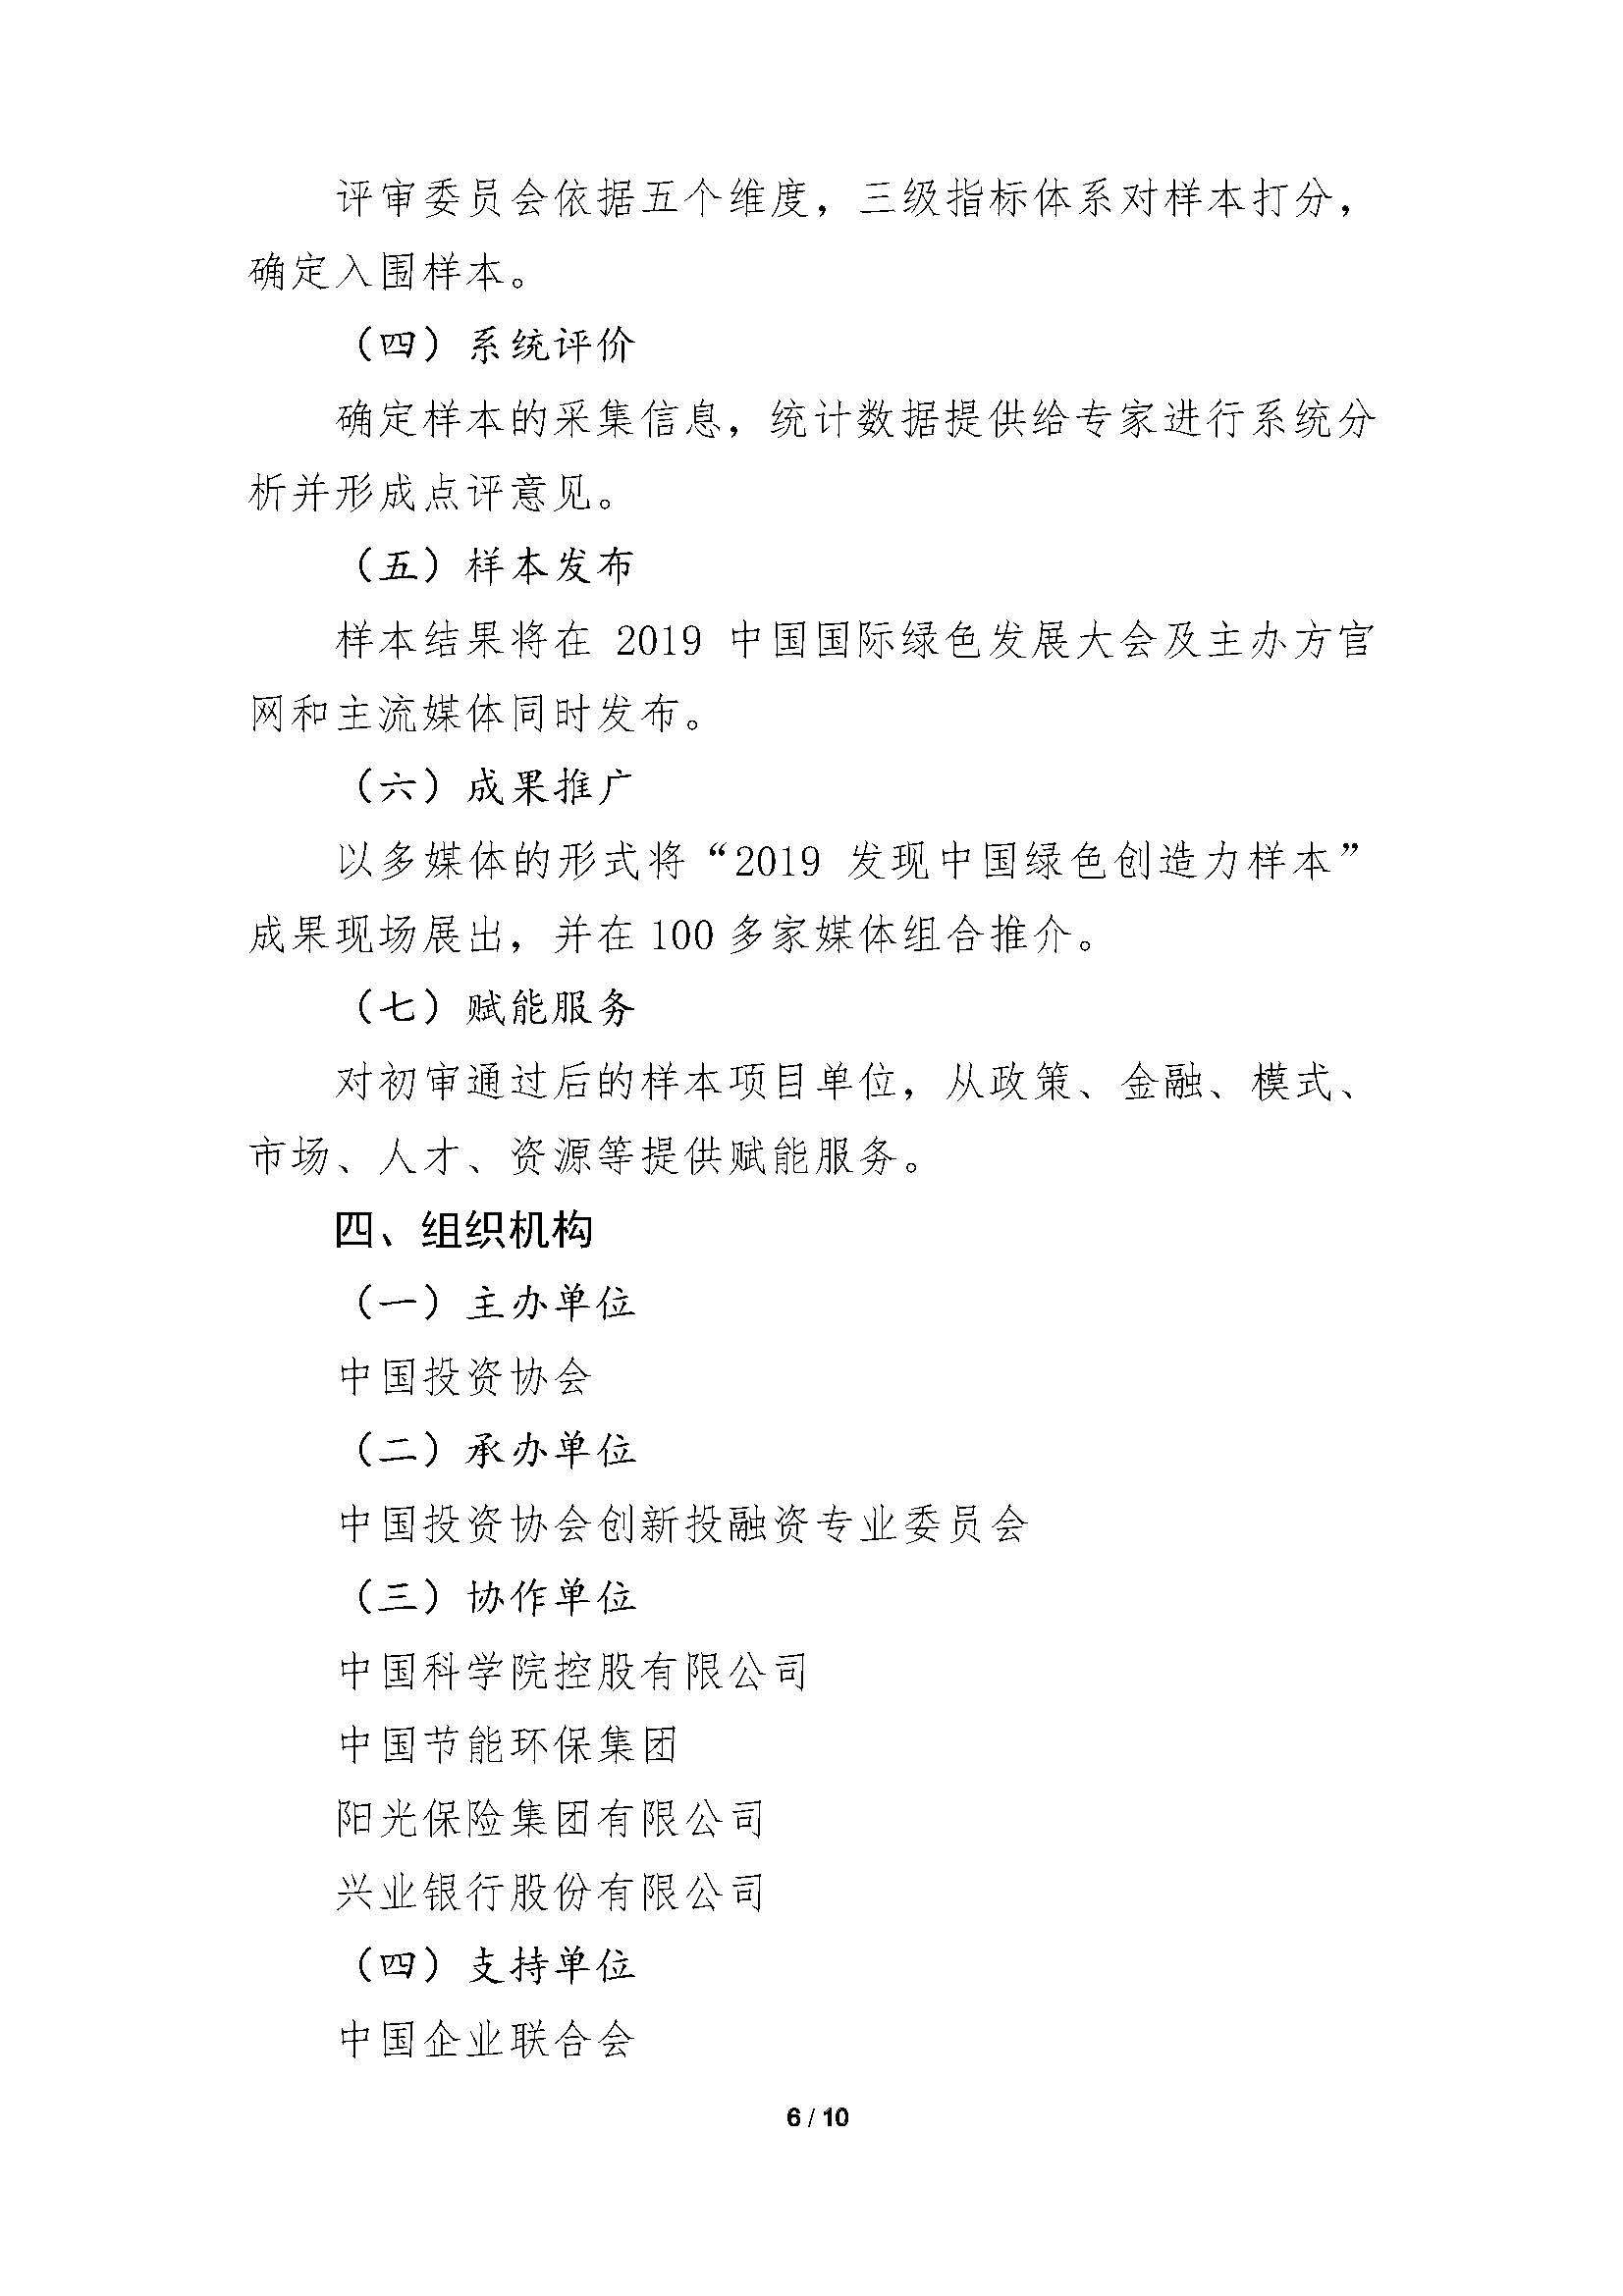 发现中国绿色创造力样本”的通知-刘建忠_页面_06.jpg